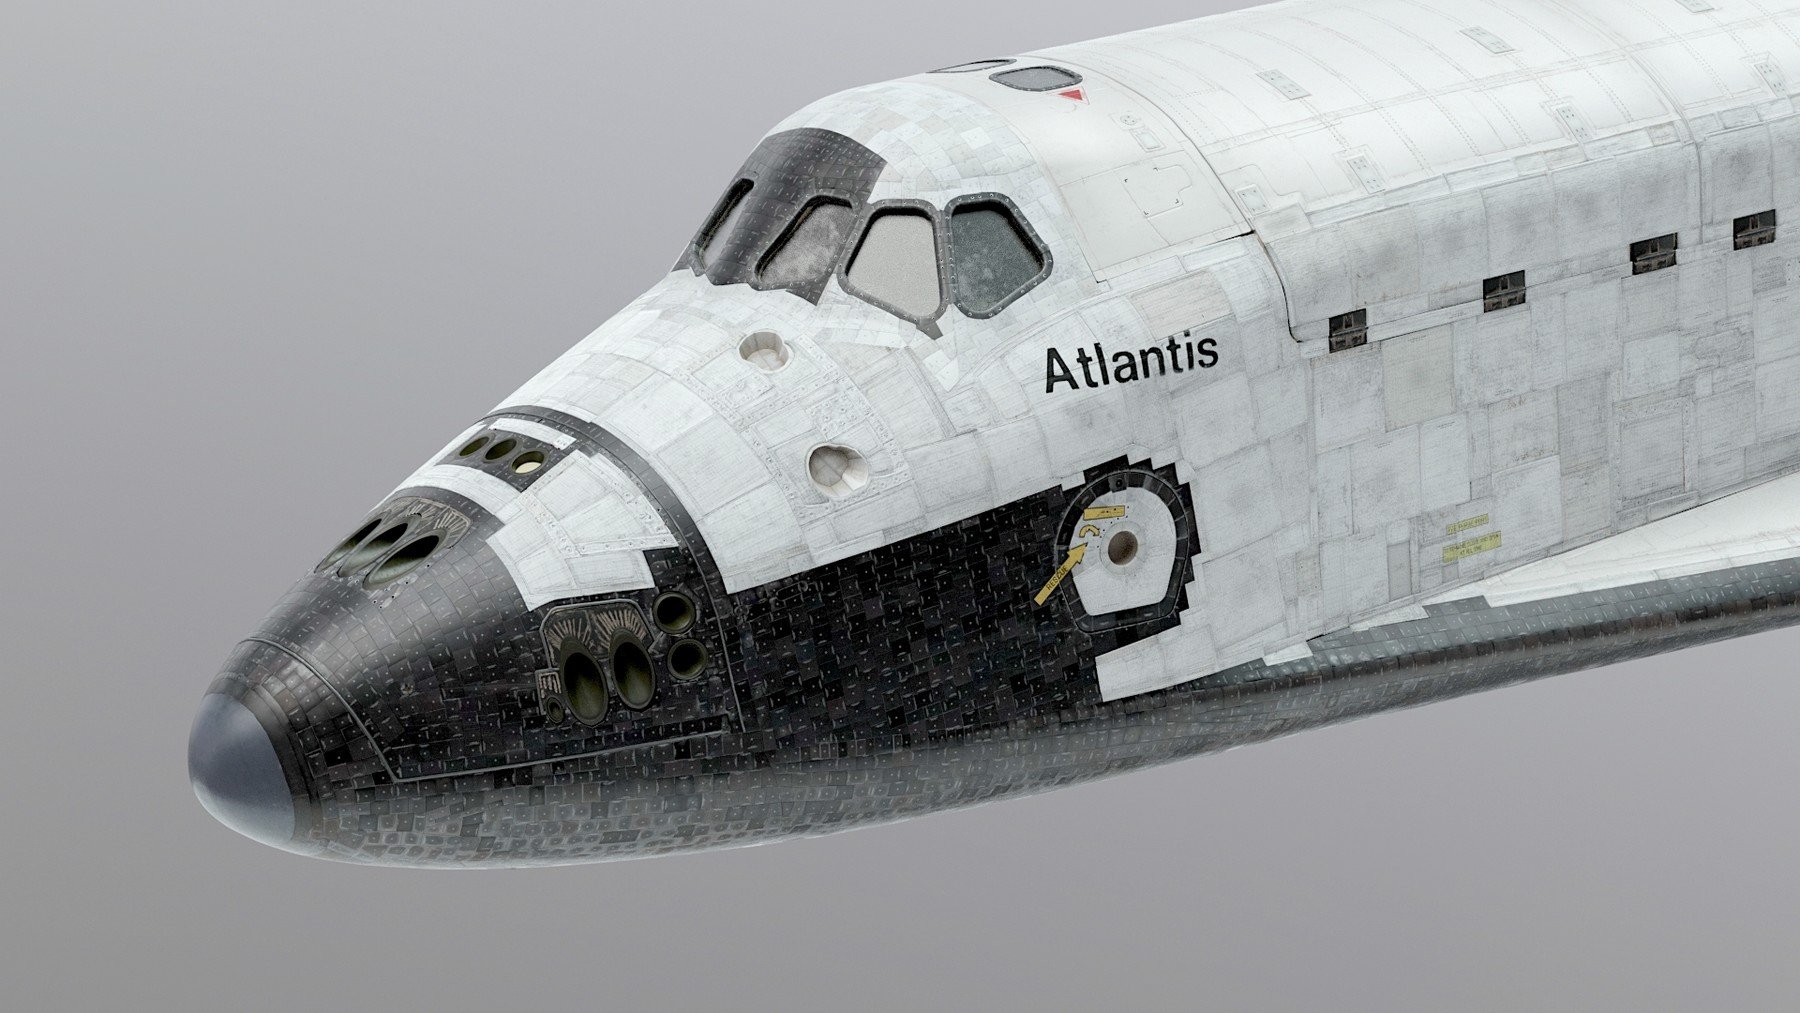 space shuttle model